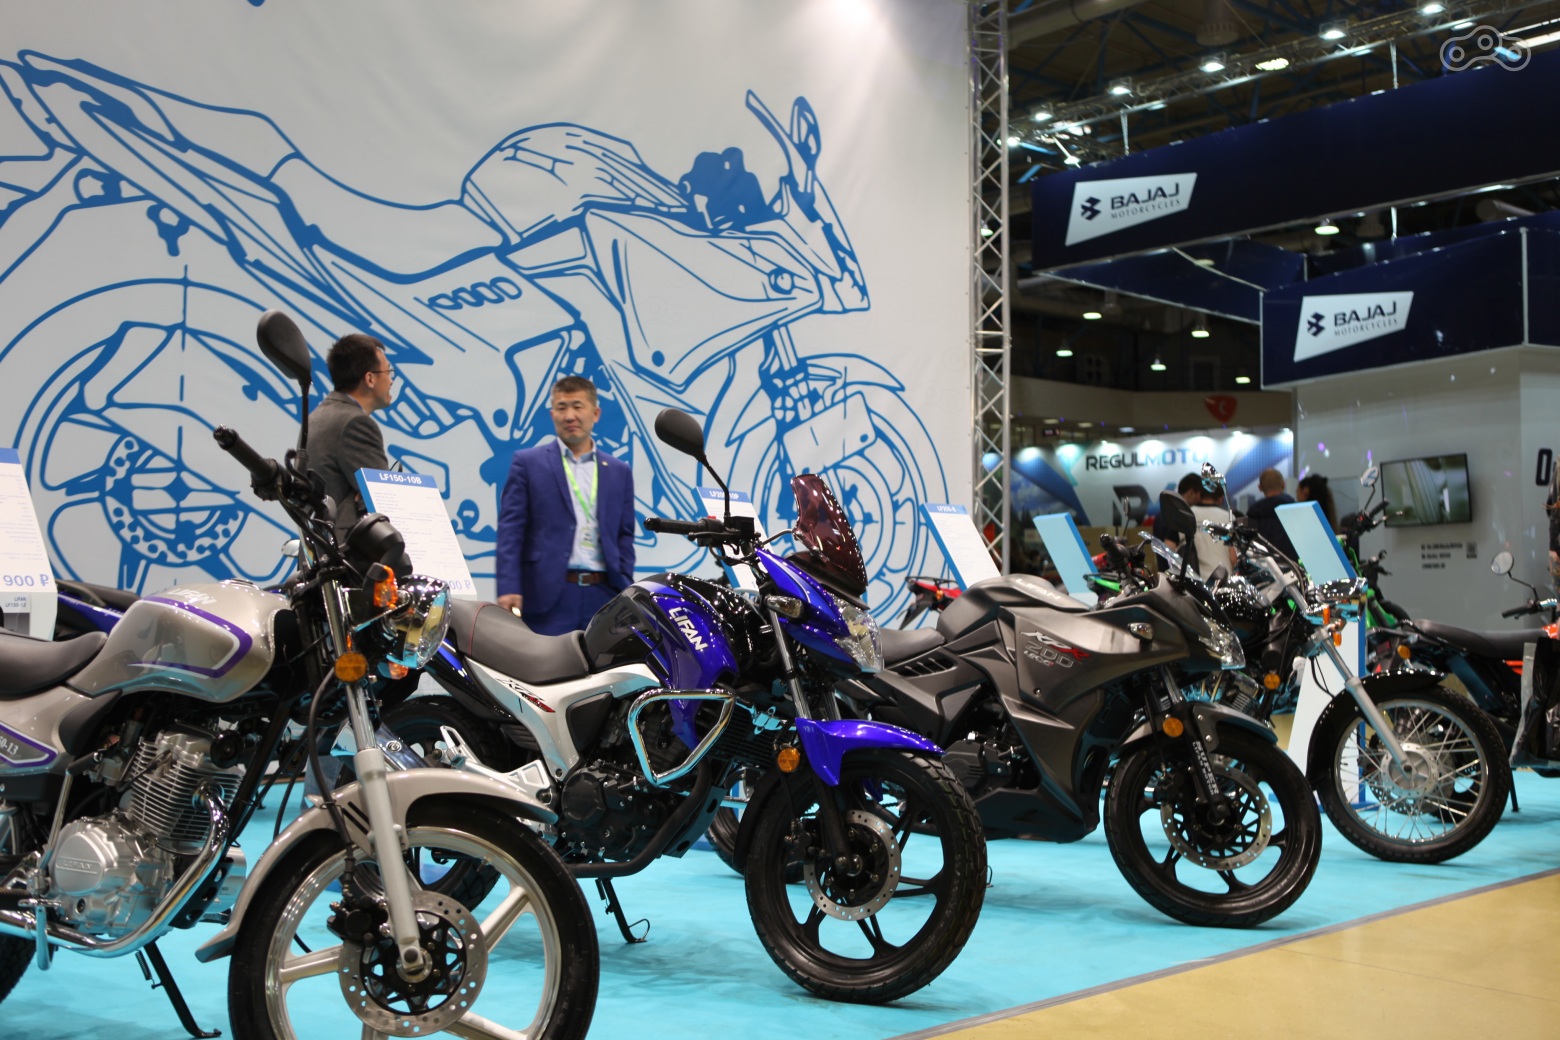 Мотоциклы Lifan на выставке Мотовесна 2019